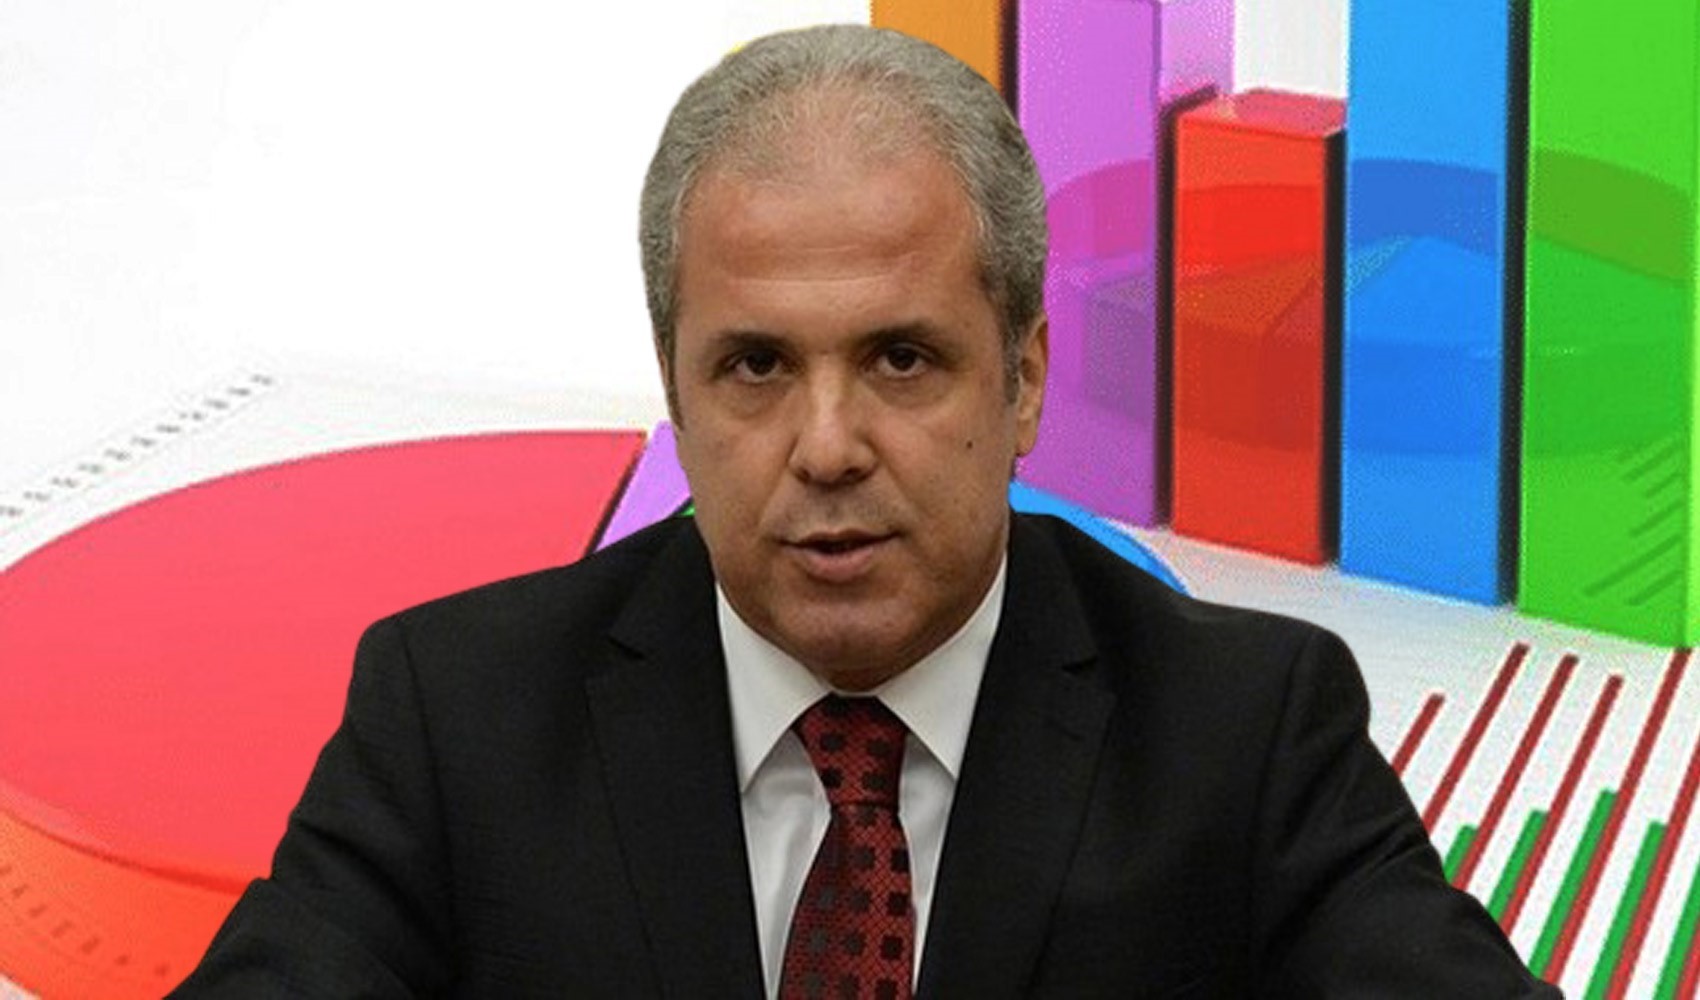 AKP'li Tayyar, anket sonuçları üzerinden partisini eleştirdi. 'CHP enselerinde'